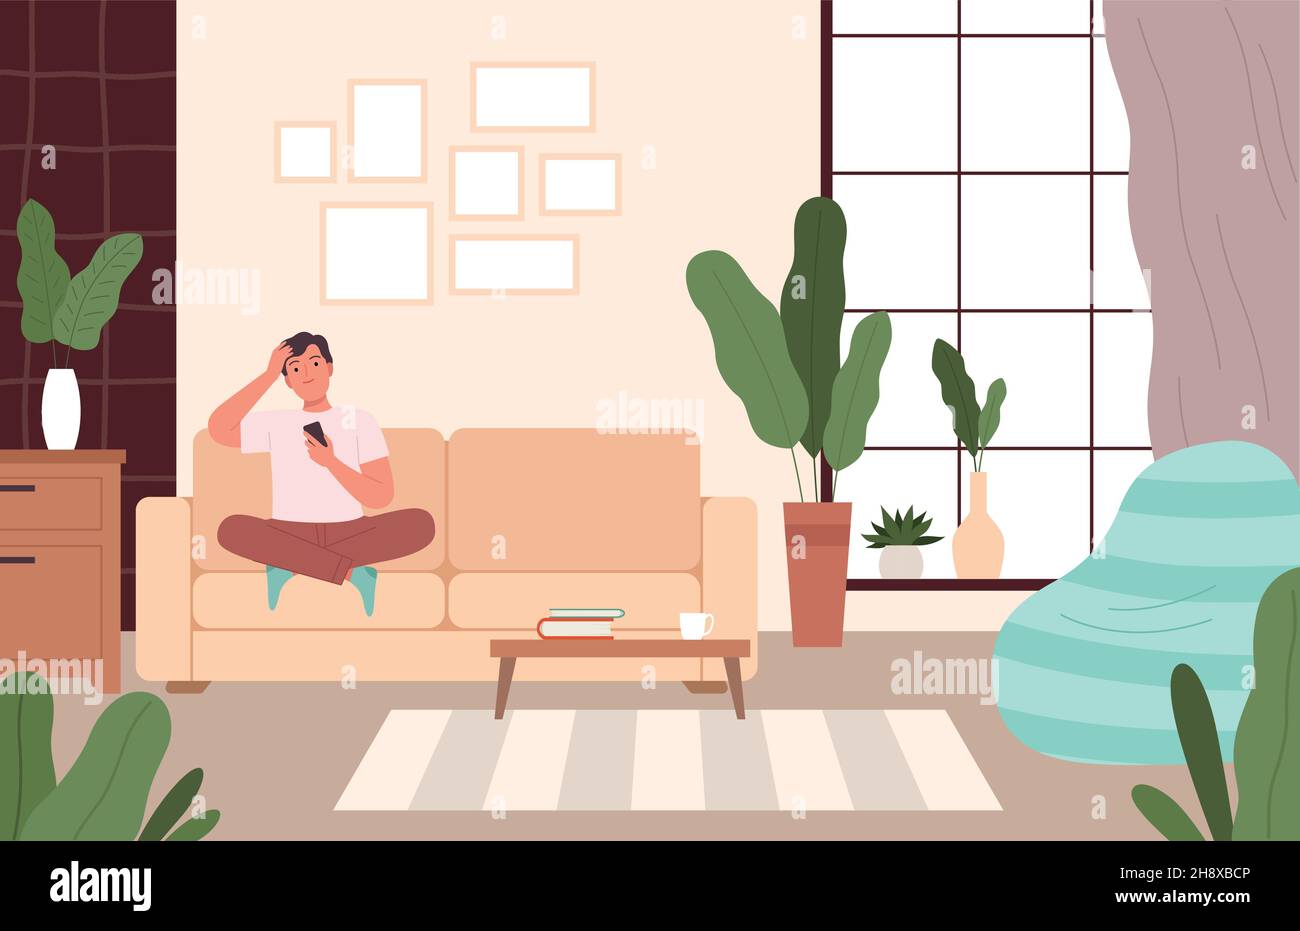 Un homme sur un canapé se détendre.Personne assise dans le salon confortable loisir dans différentes poses sur le canapé rêver et repos dessin animé vectoriel de nowaday Illustration de Vecteur